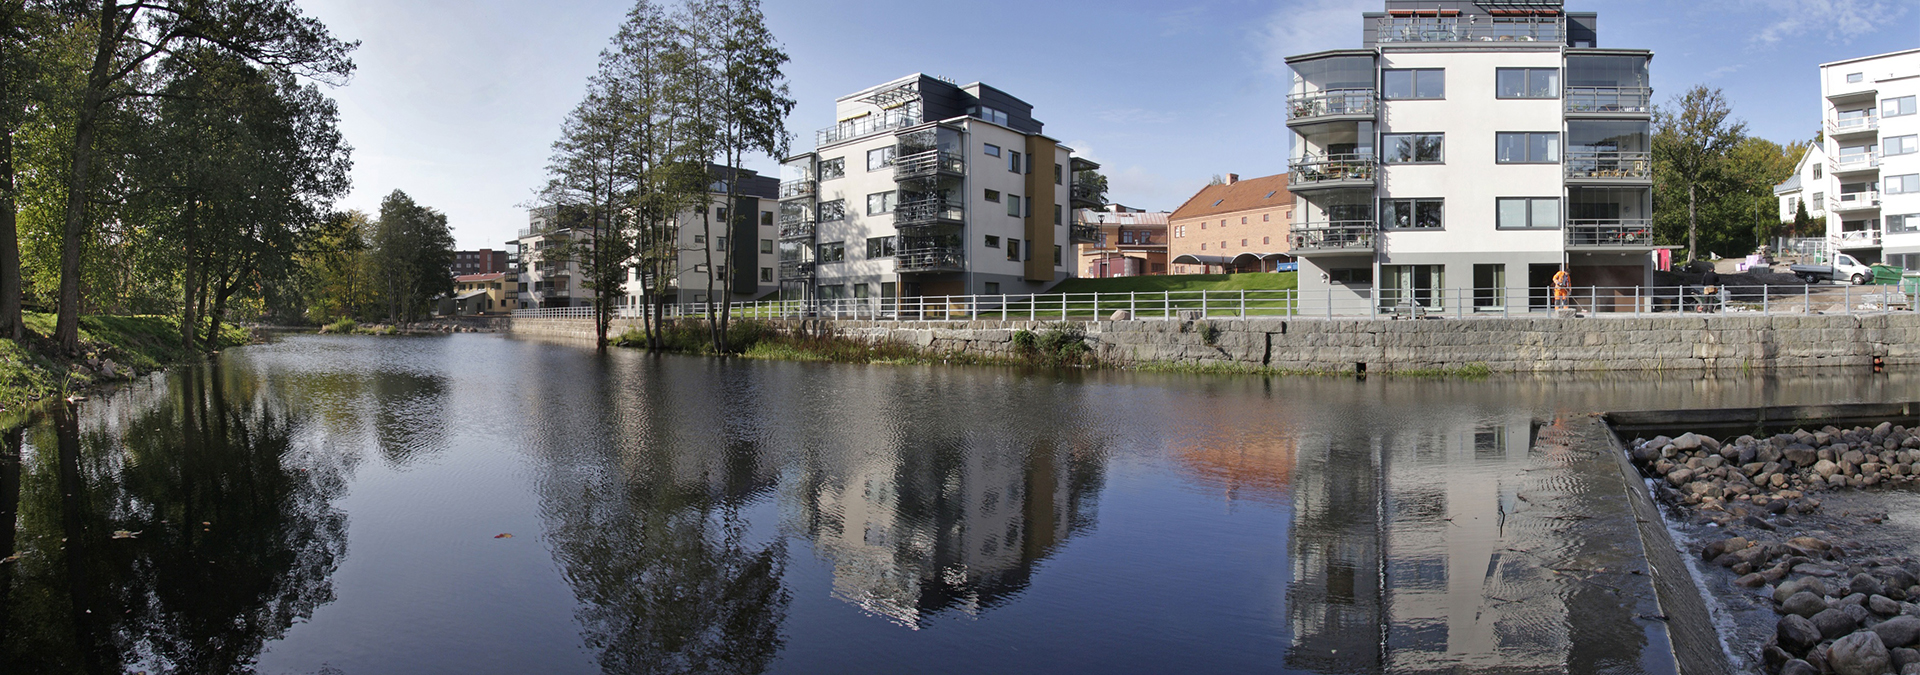 Vita flerbostadshus invid Svartån i Mjölby fotograferade en solig dag. 